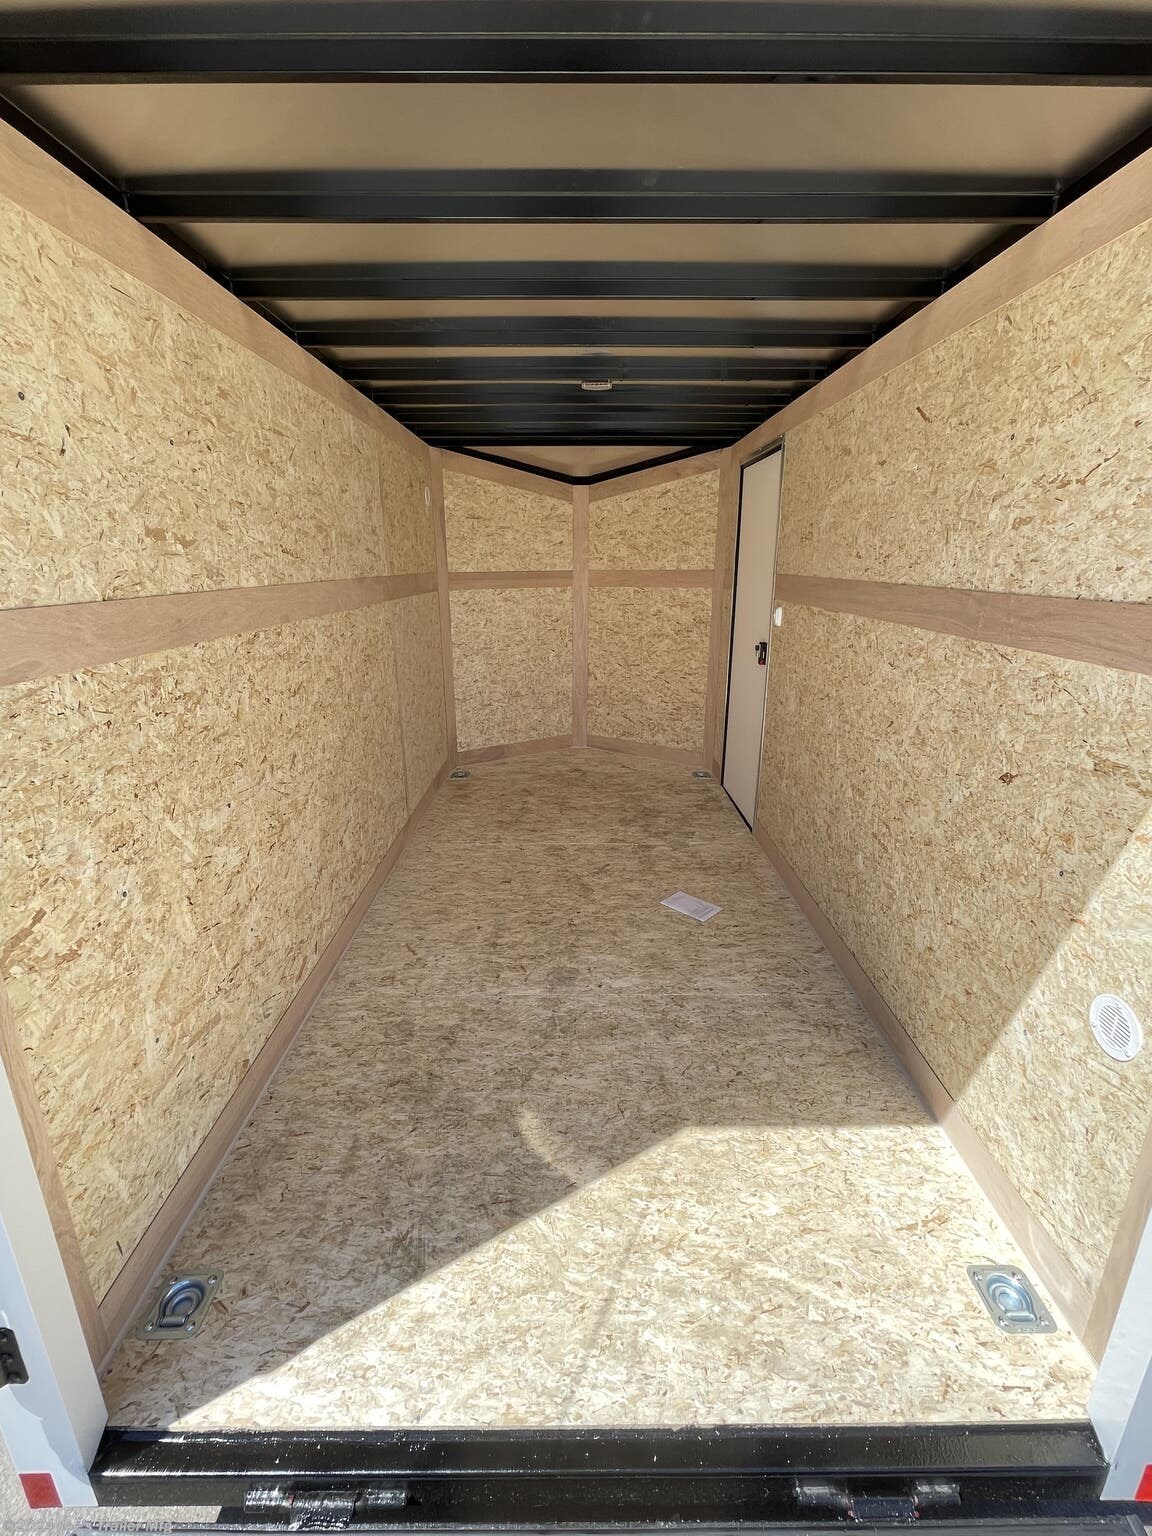 6 x 12 enclosed trailer